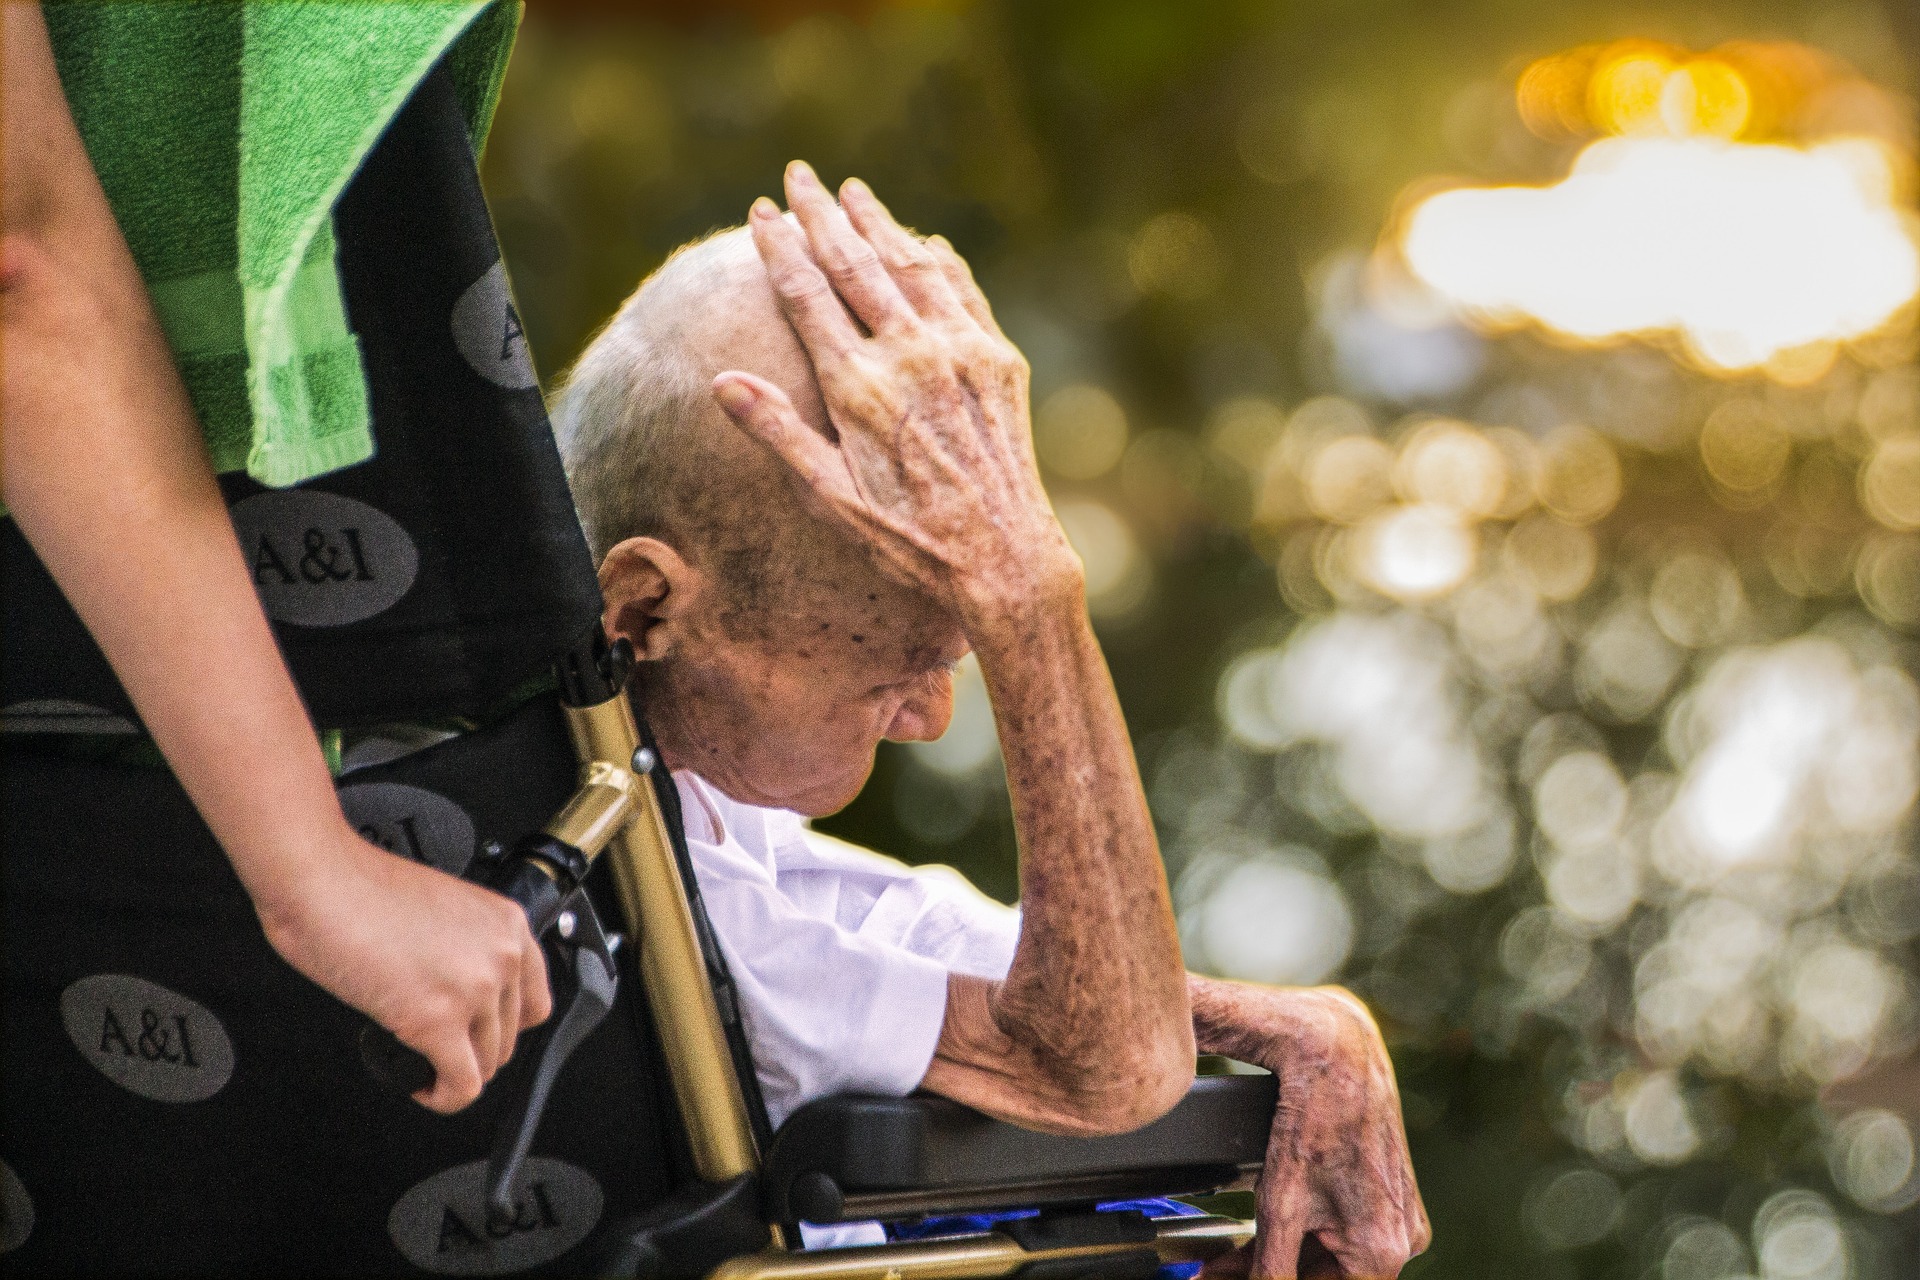 Artigo aborda tomadas de decisão de familiares cuidadores de pessoas com demência avançada no fim de vida